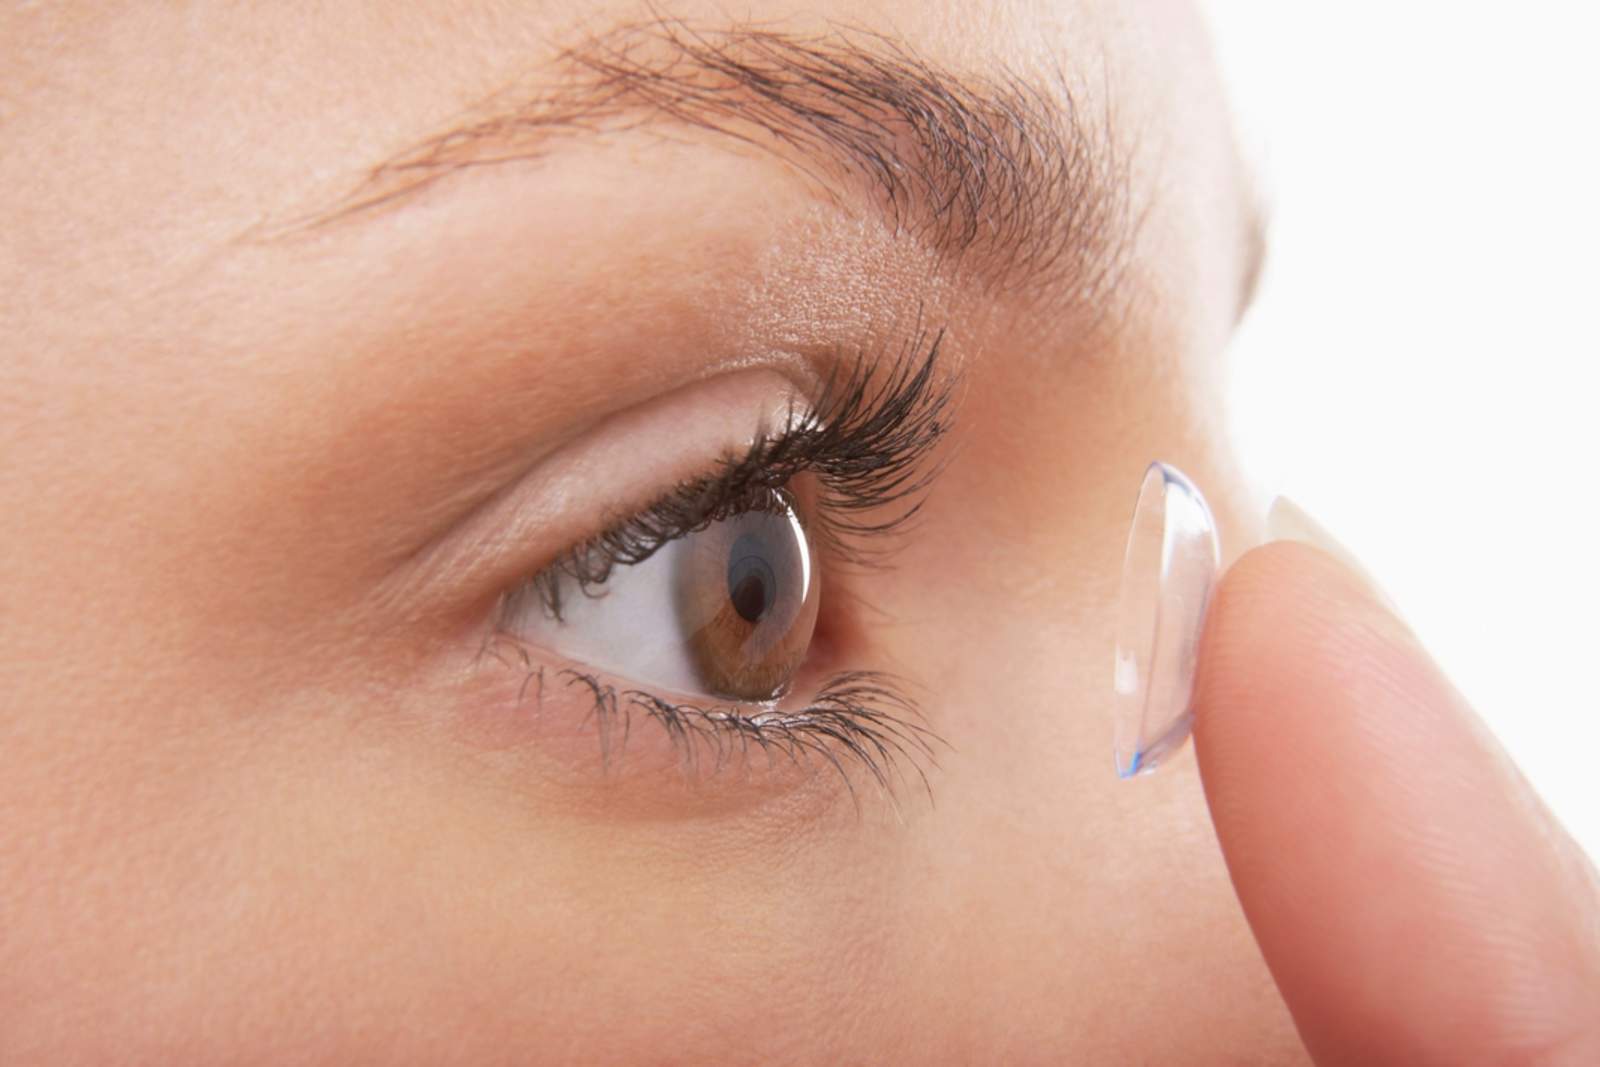 Los lentes de contacto corrigen errores refractivos como miopía, hipermetropía, astigmatismo y presbicia. (ARCHIVO)